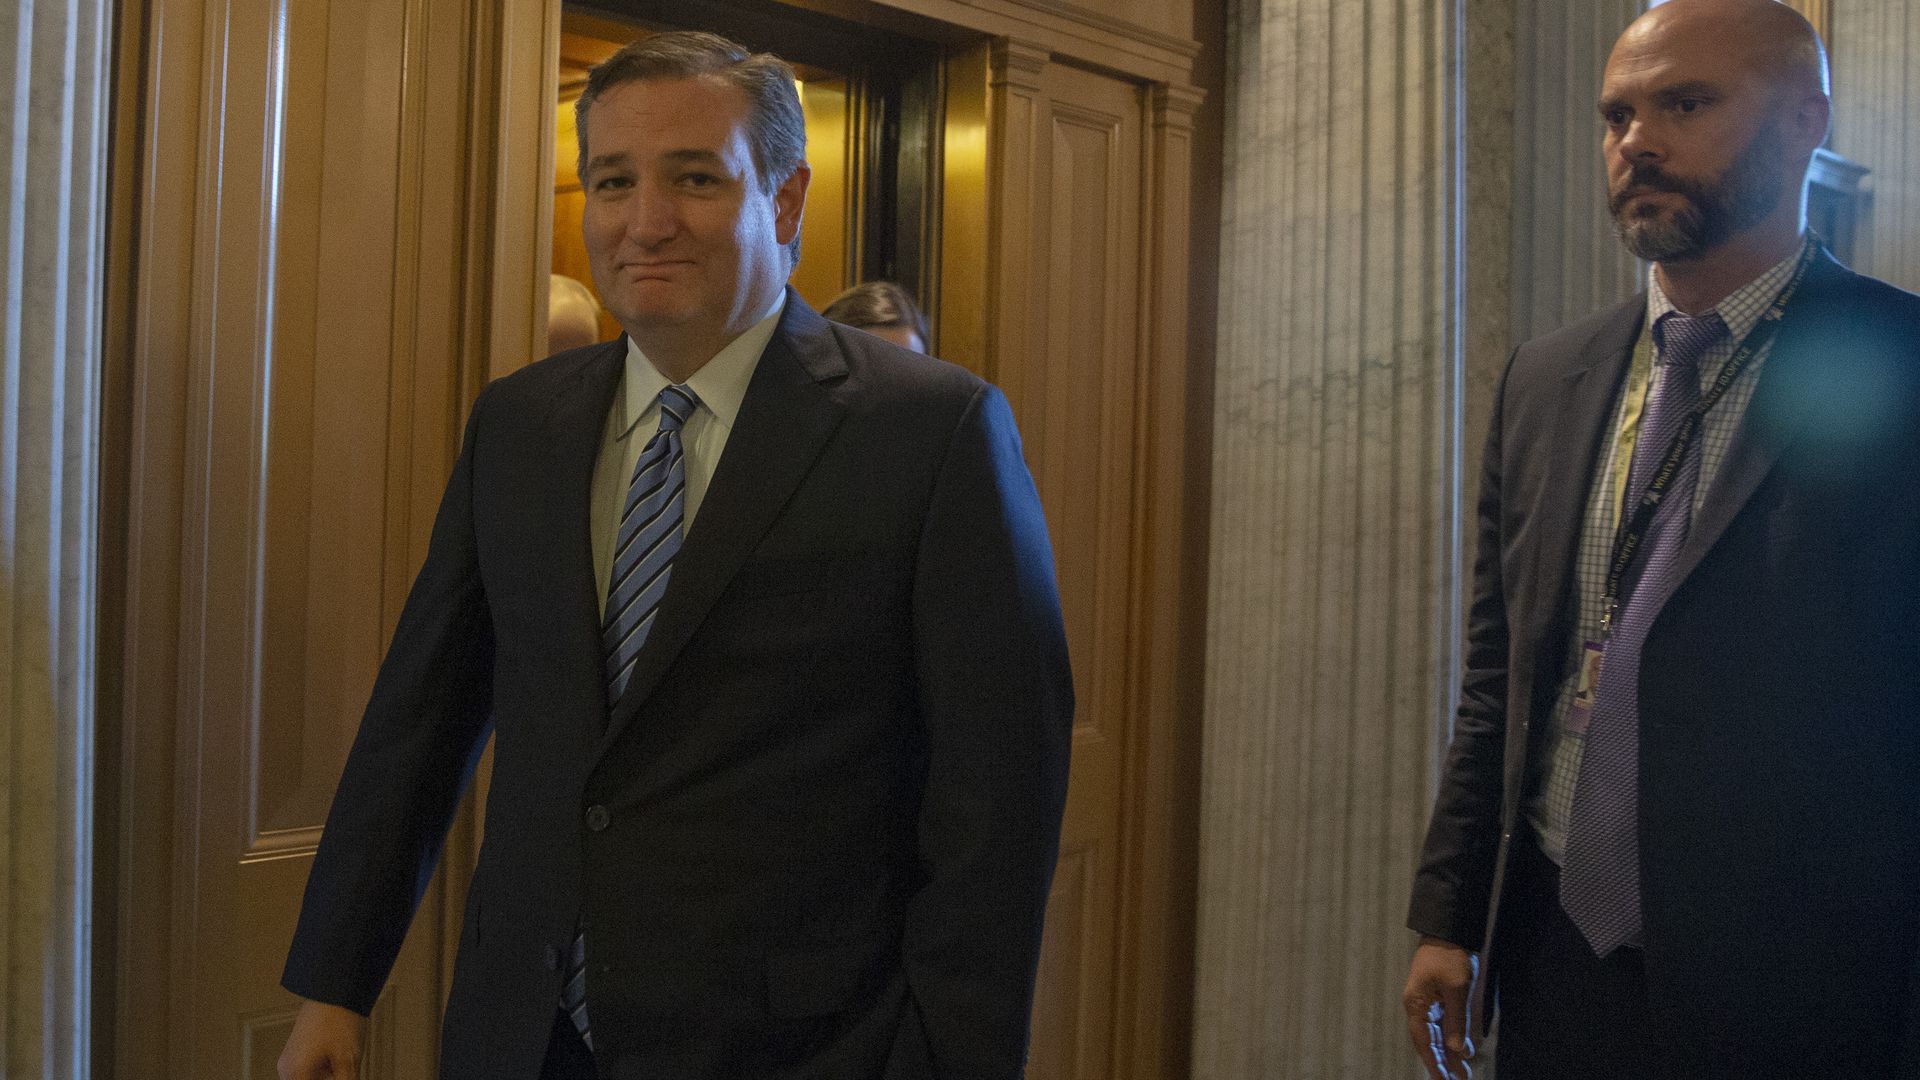 Senator Ted Cruz smiling